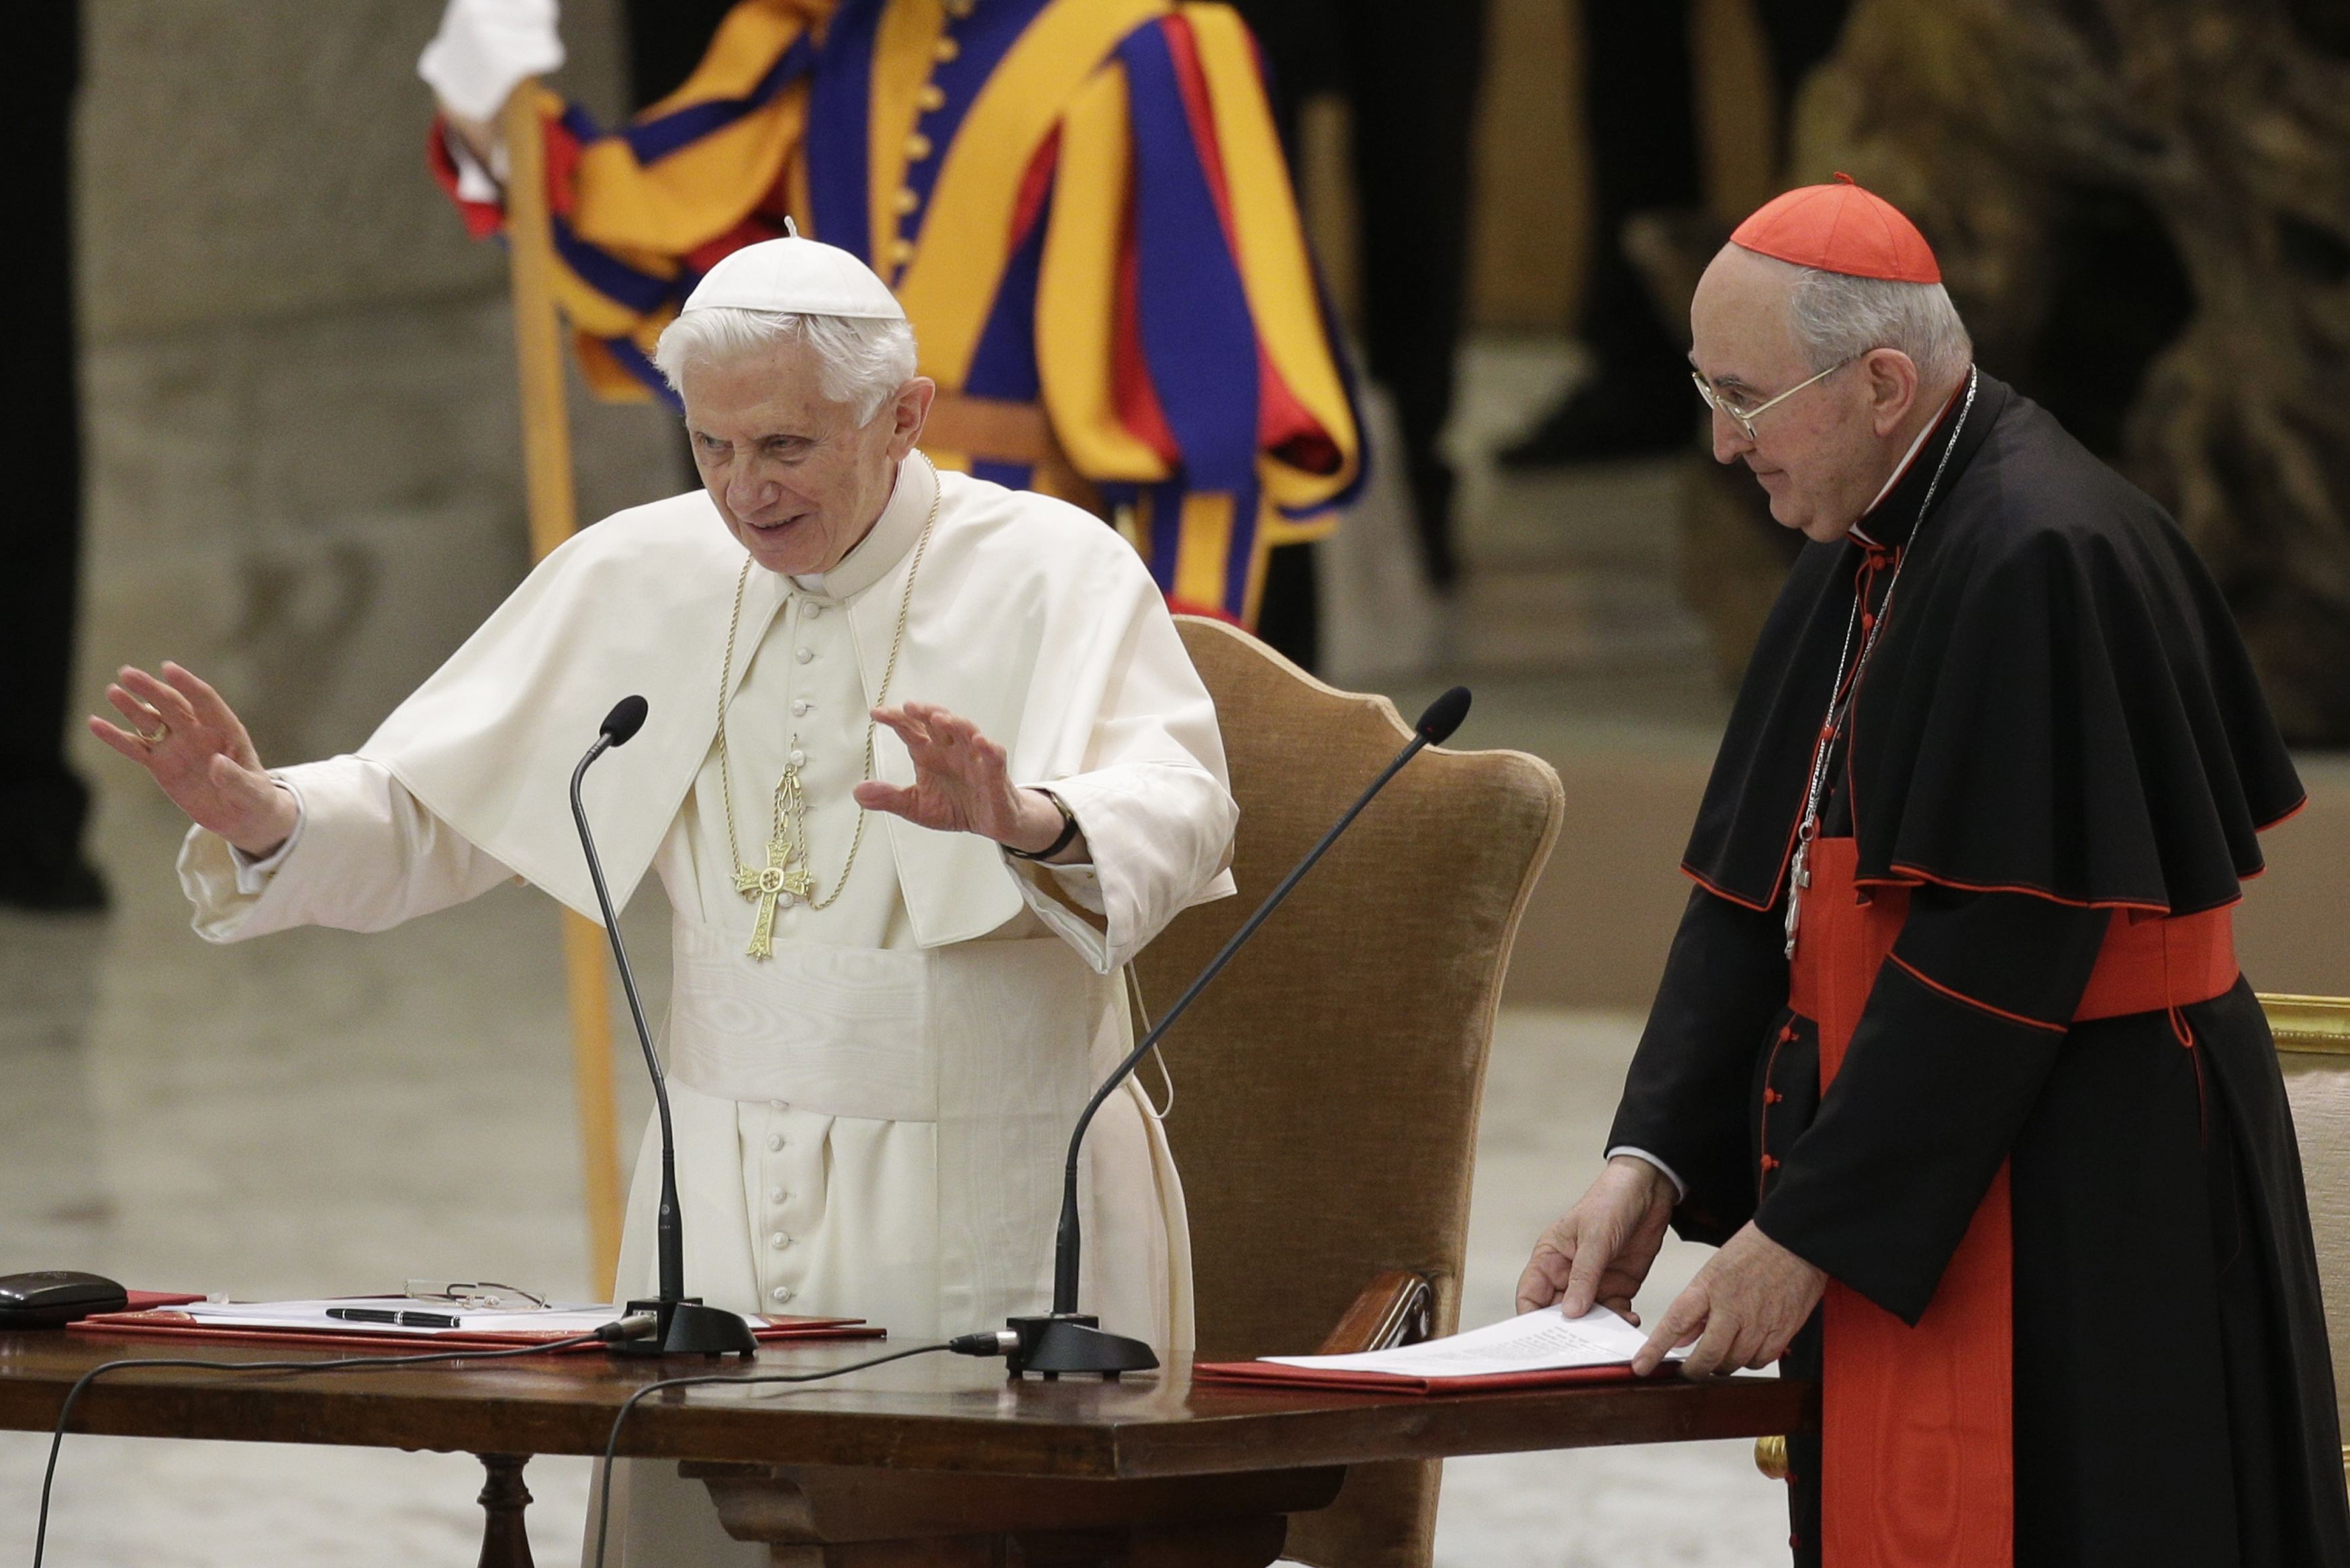 Папата се оттегля с личния си секретар и четири монахини